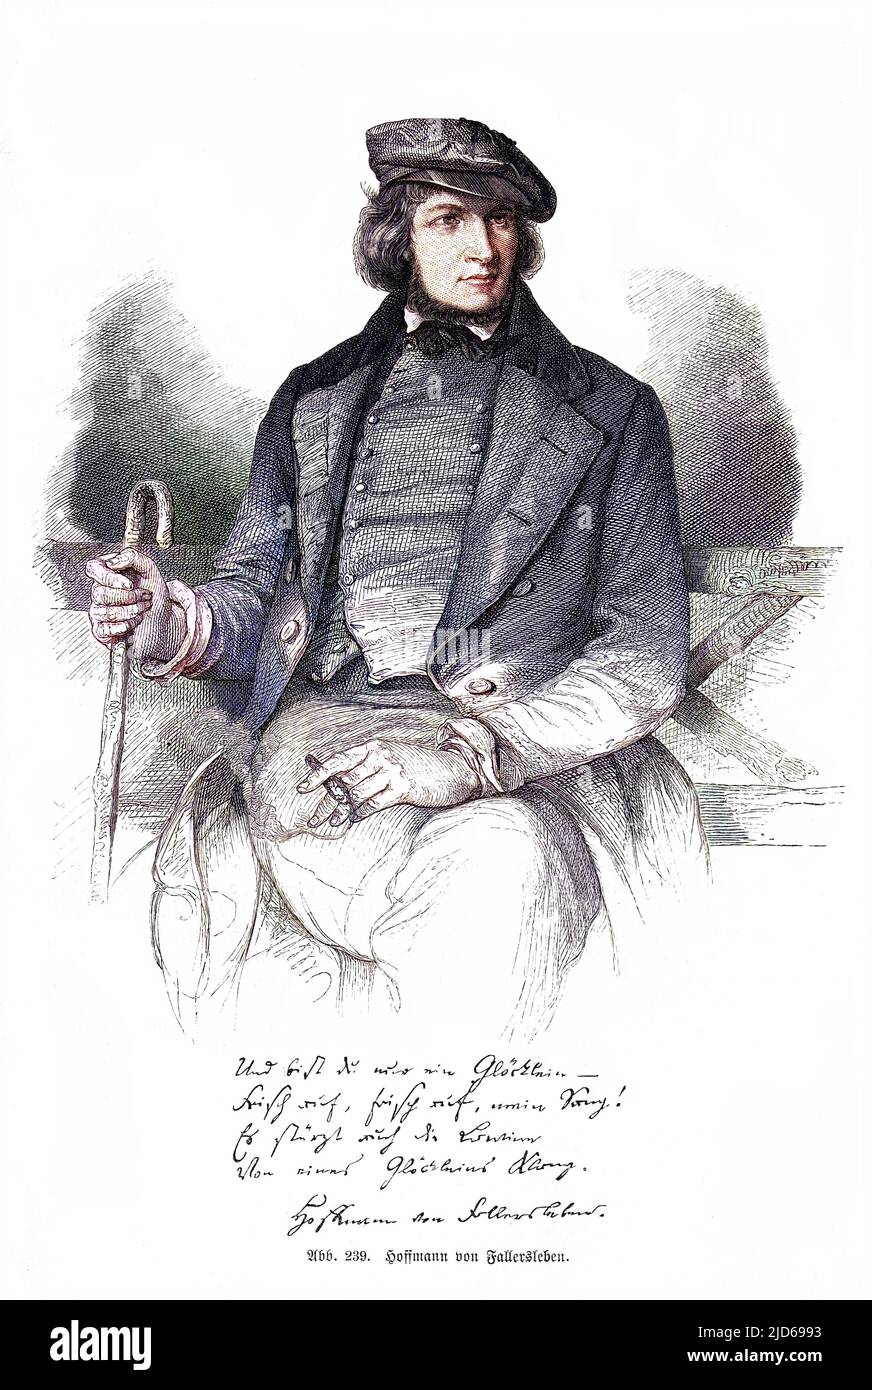 AUGUST HEINRICH HOFFMANN von FALLERSLEBEN deutscher Schriftsteller, raucht eine Zigarre mit seinem Autograph Colorized Version von : 10160994 Datum: 1798 - 1874 Stockfoto